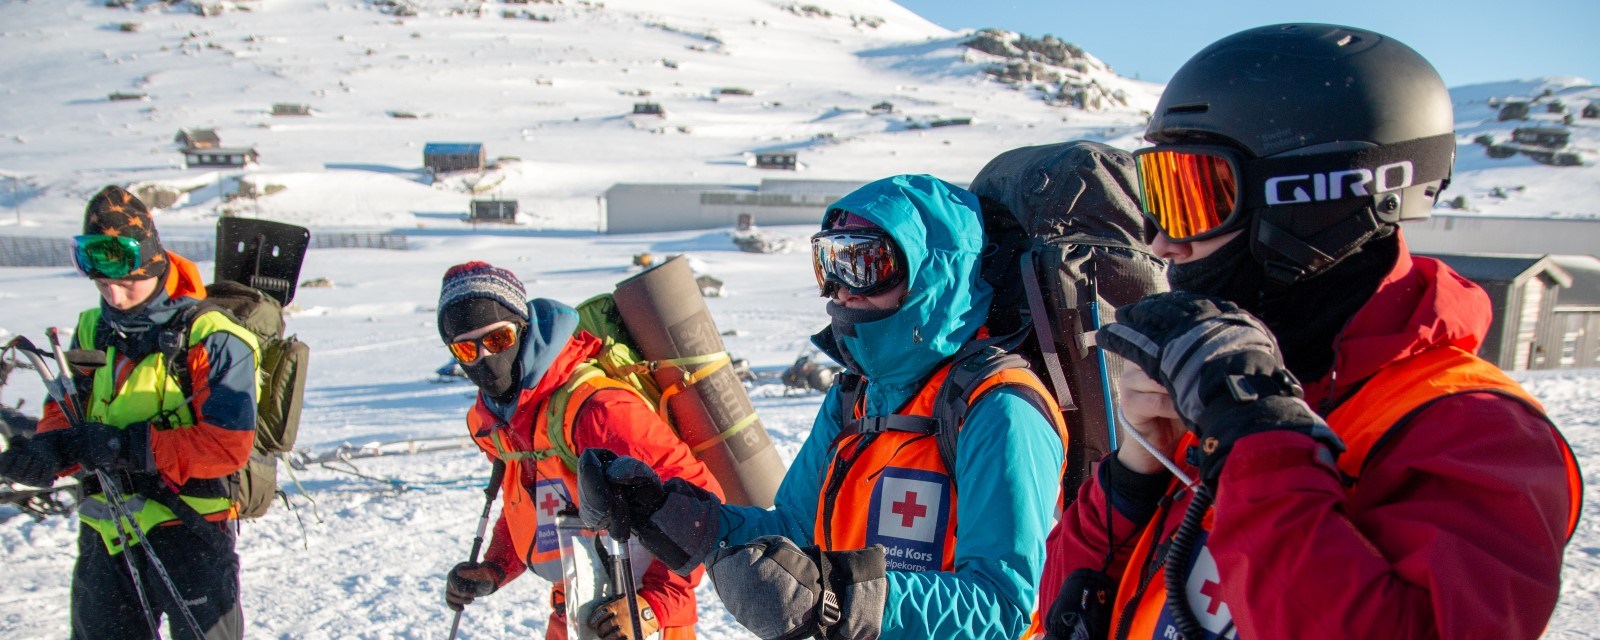 Hjelpekorpsere i uniform og i aksjon på vinterfjellet